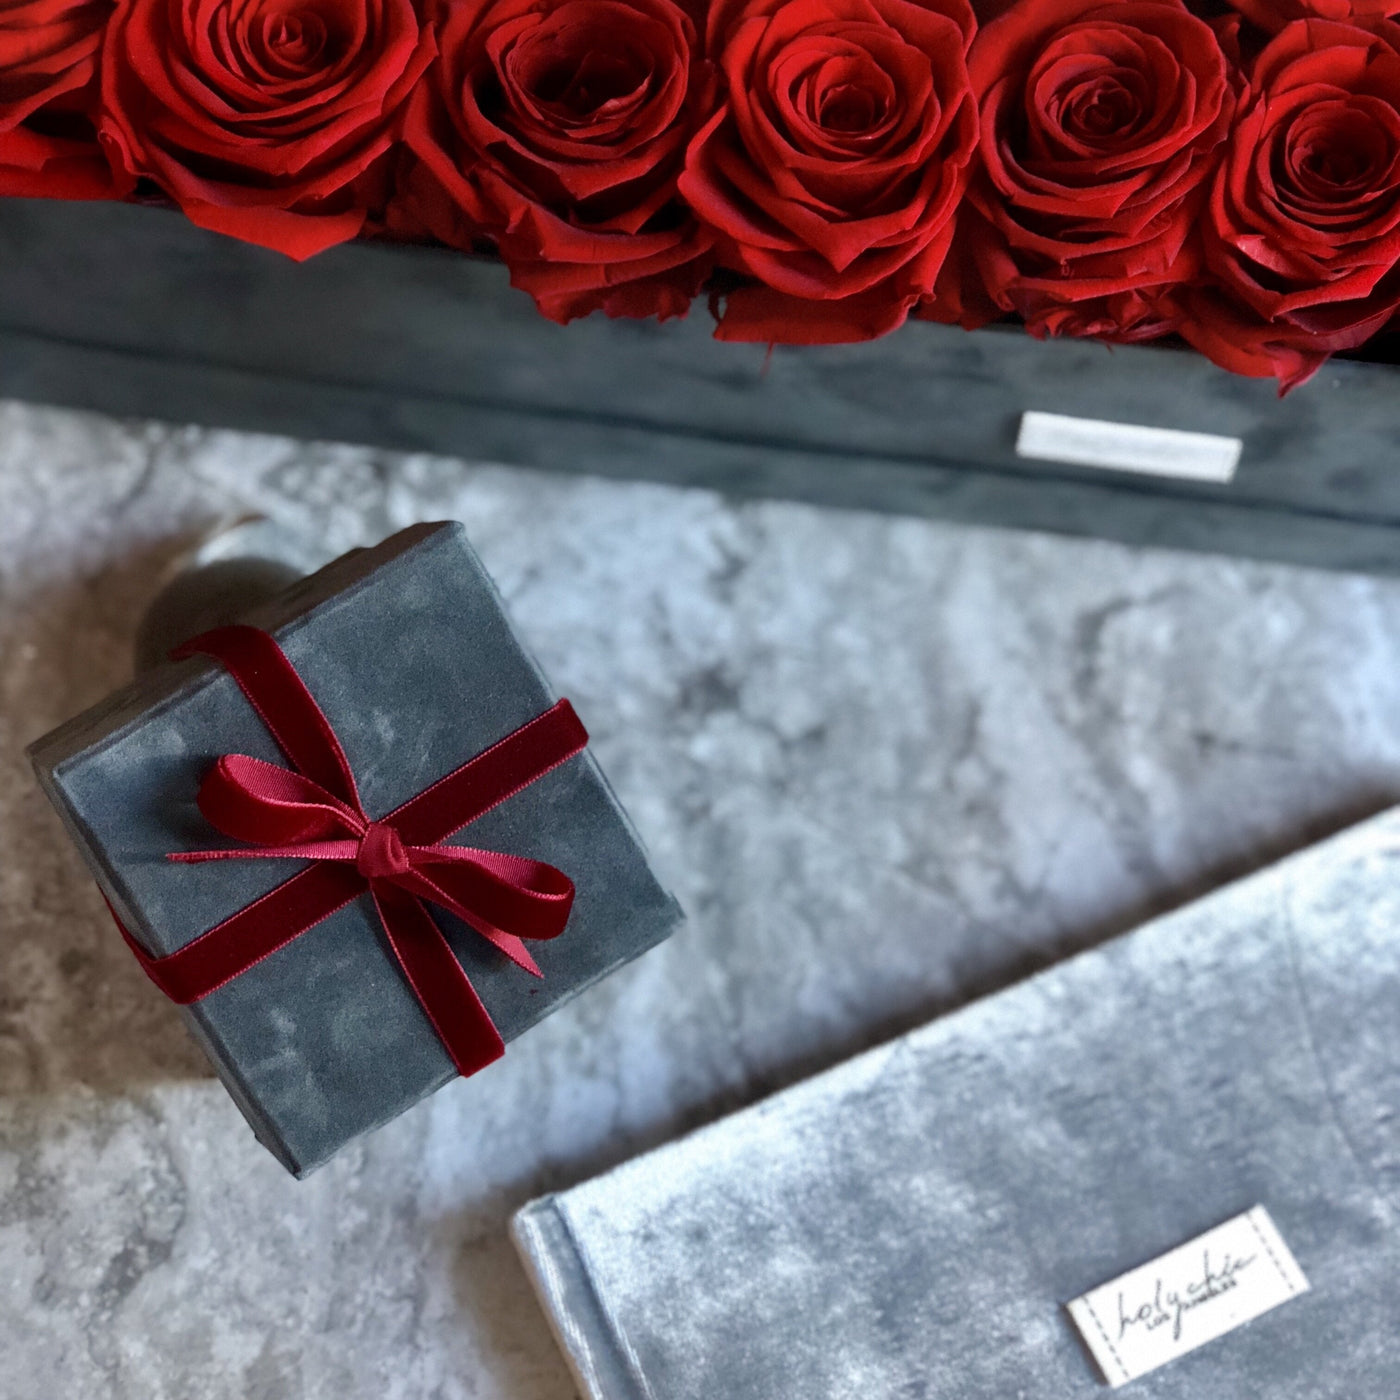 Preserved Roses in a rectangular velvet box